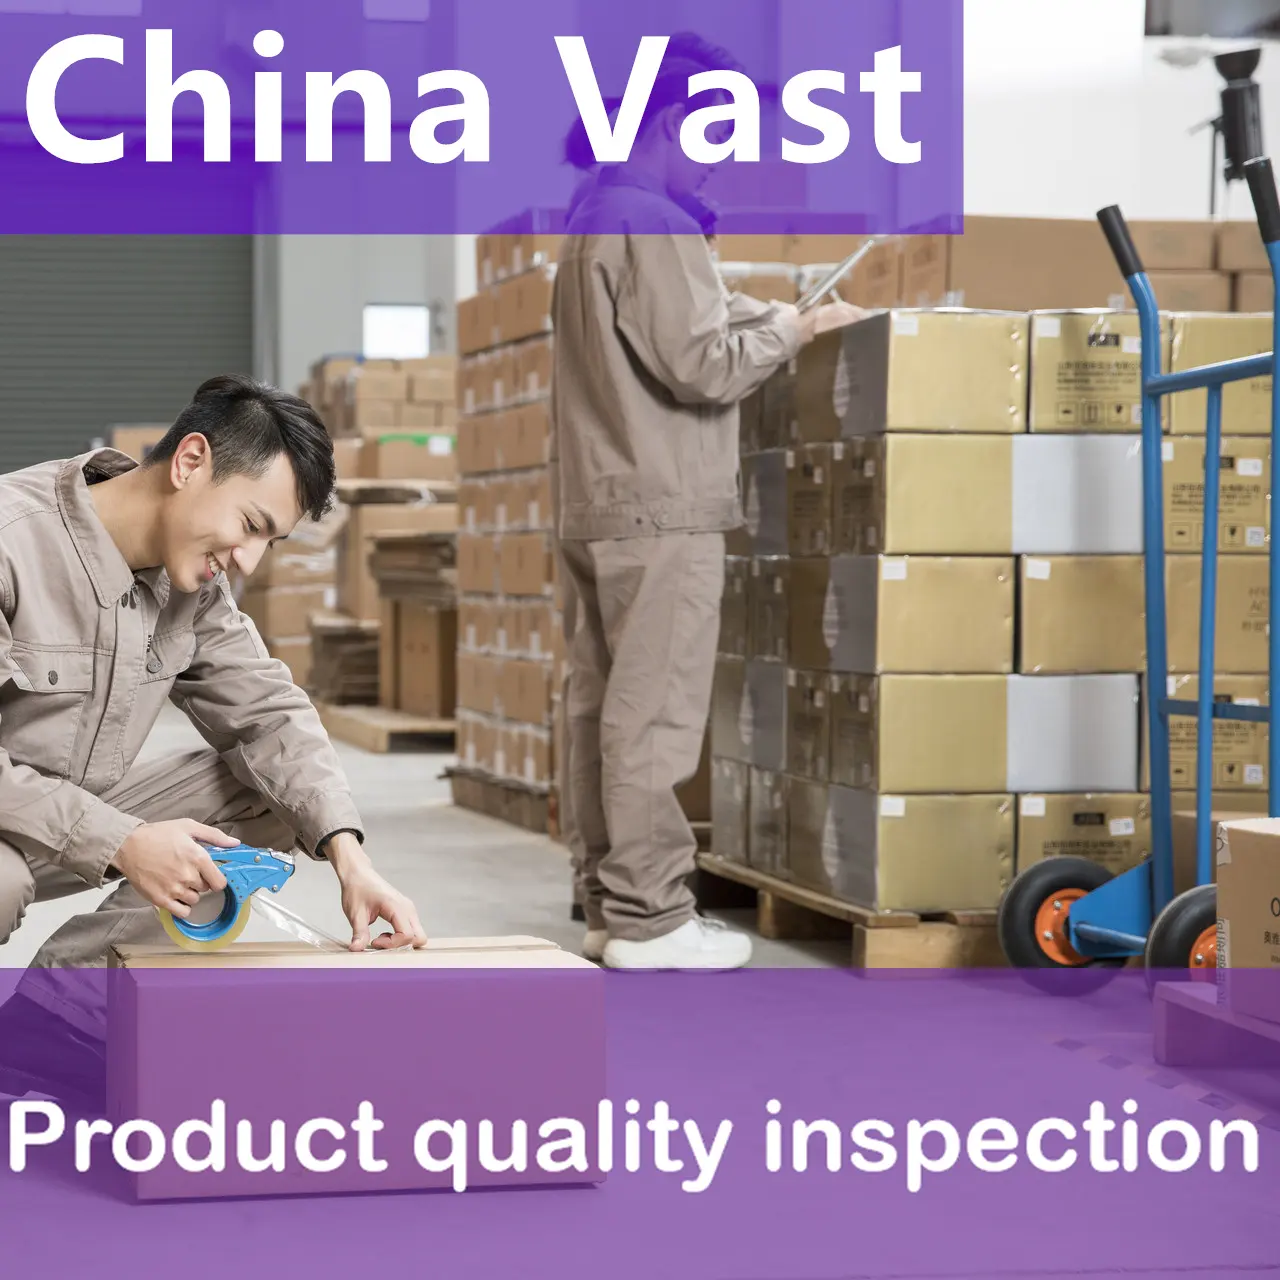 Las agencias de inspección de terceros pueden ayudarlo a verificar la autenticidad de su fábrica, que es profesional y experimentada